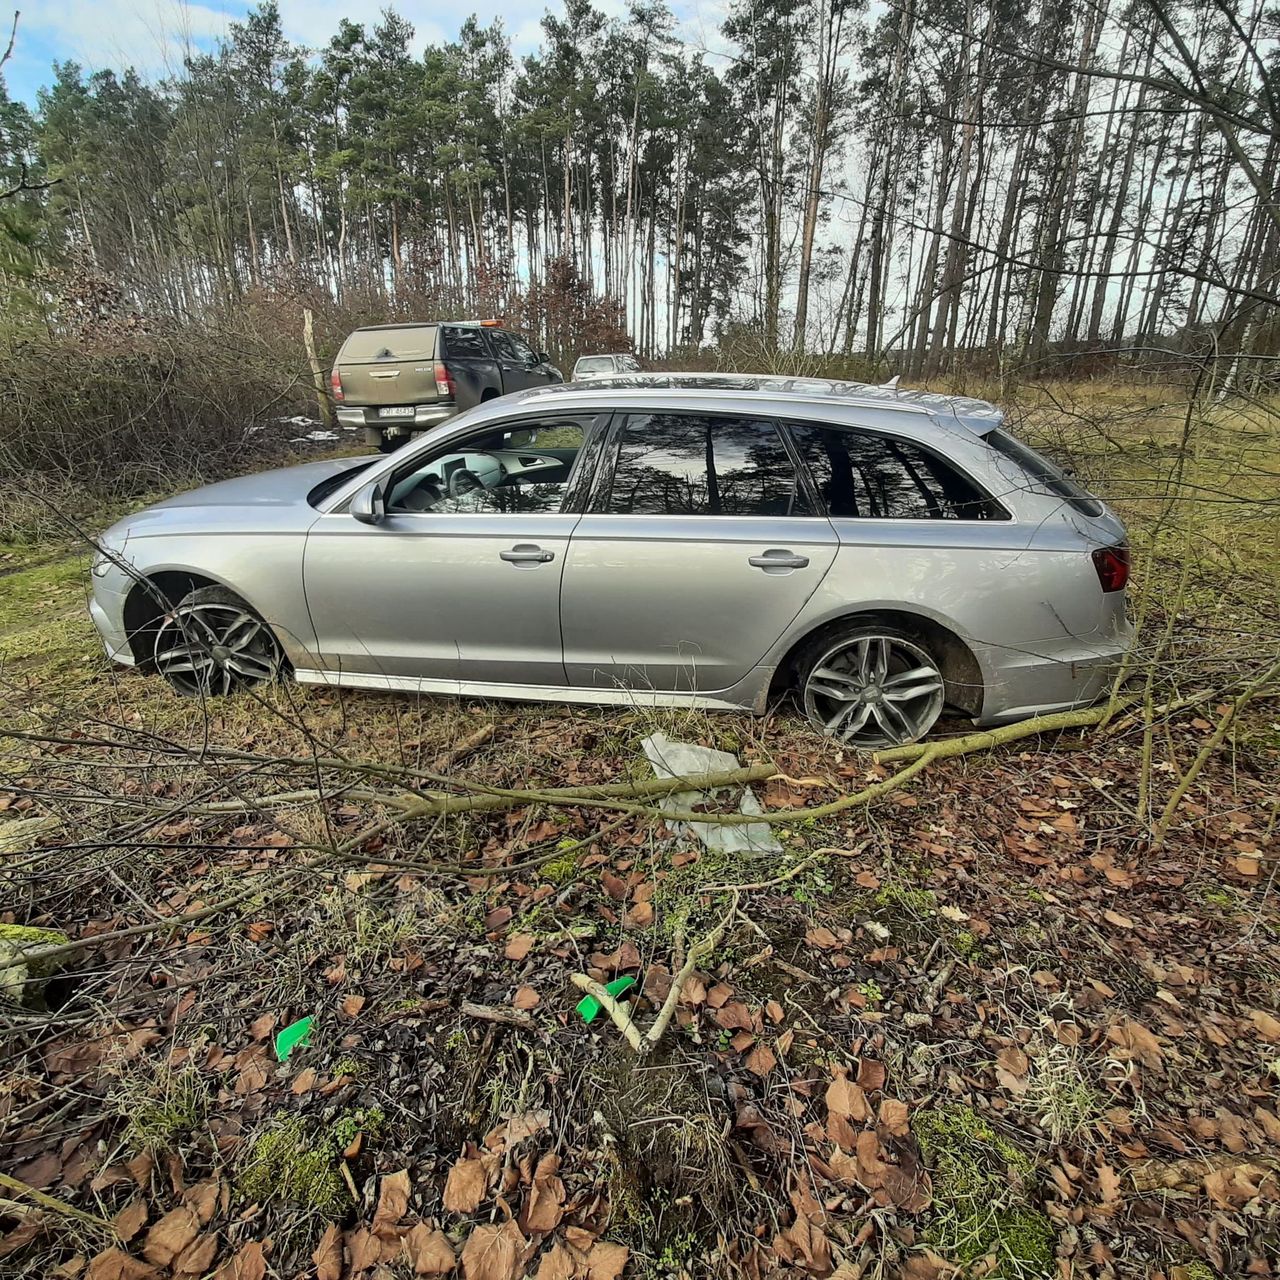 Audi bez opon, za to z włączonym silnikiem. Policja ma niezłą zagadkę